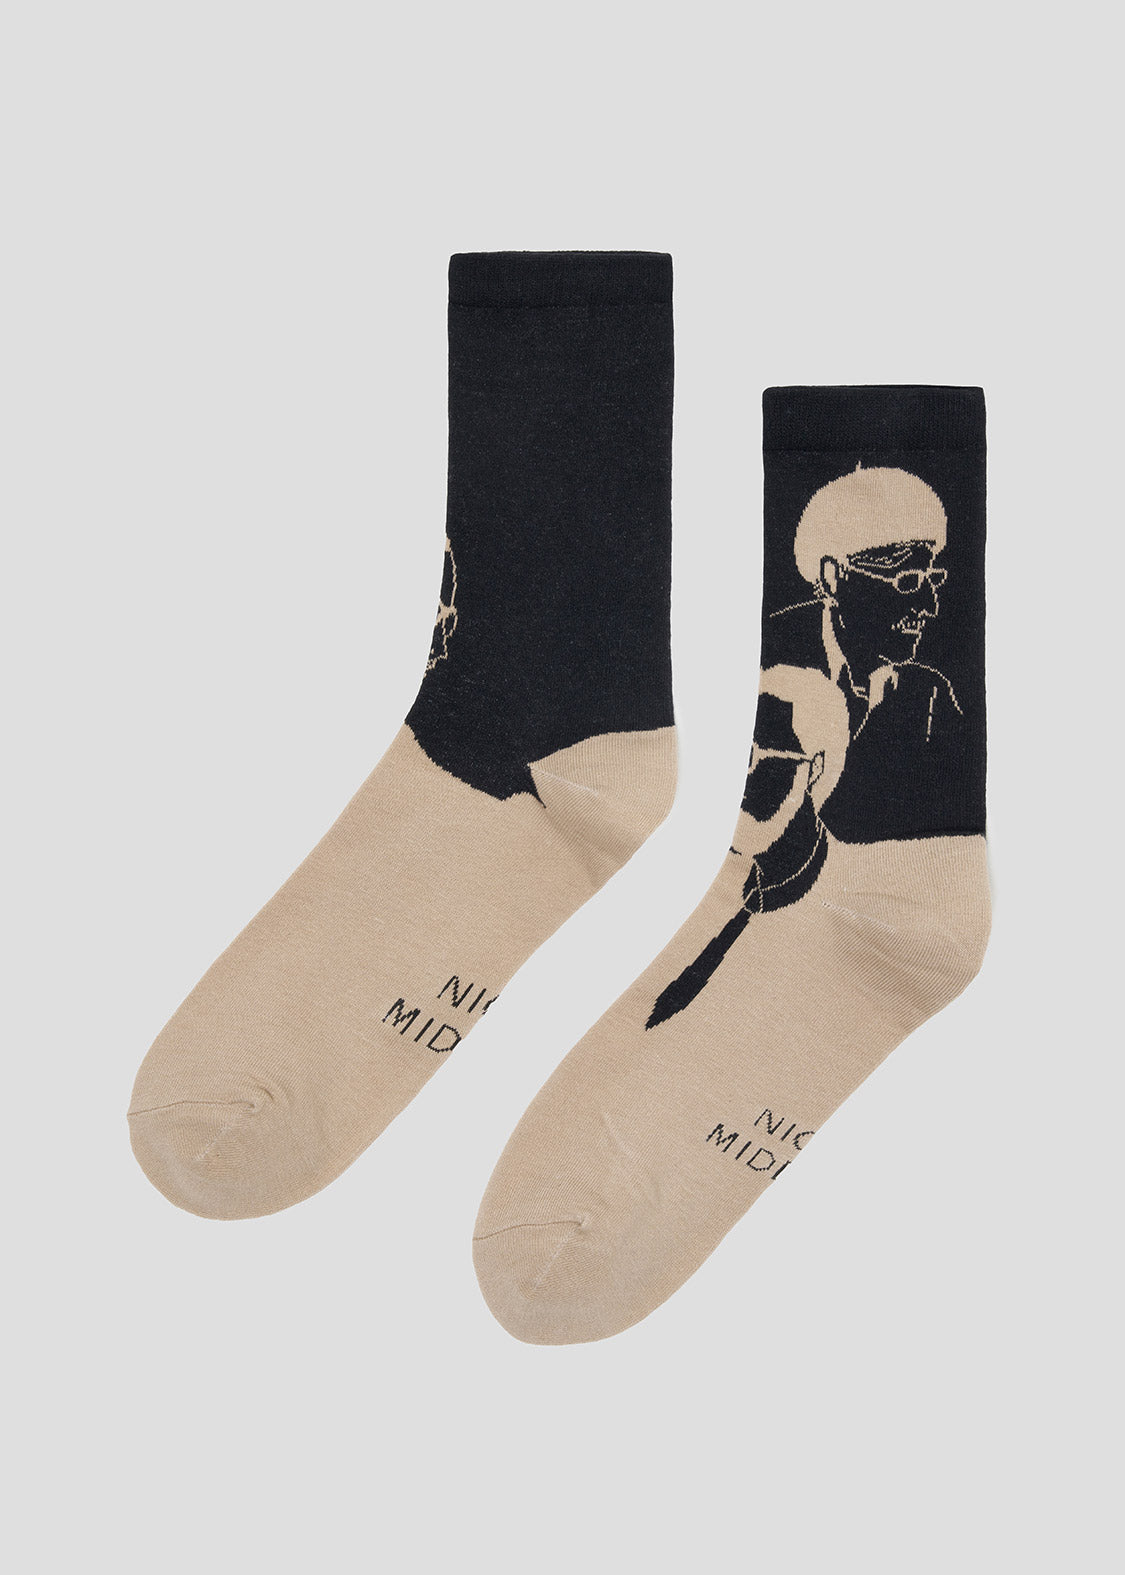 Middle Socks (Nice Middle-aged Men)